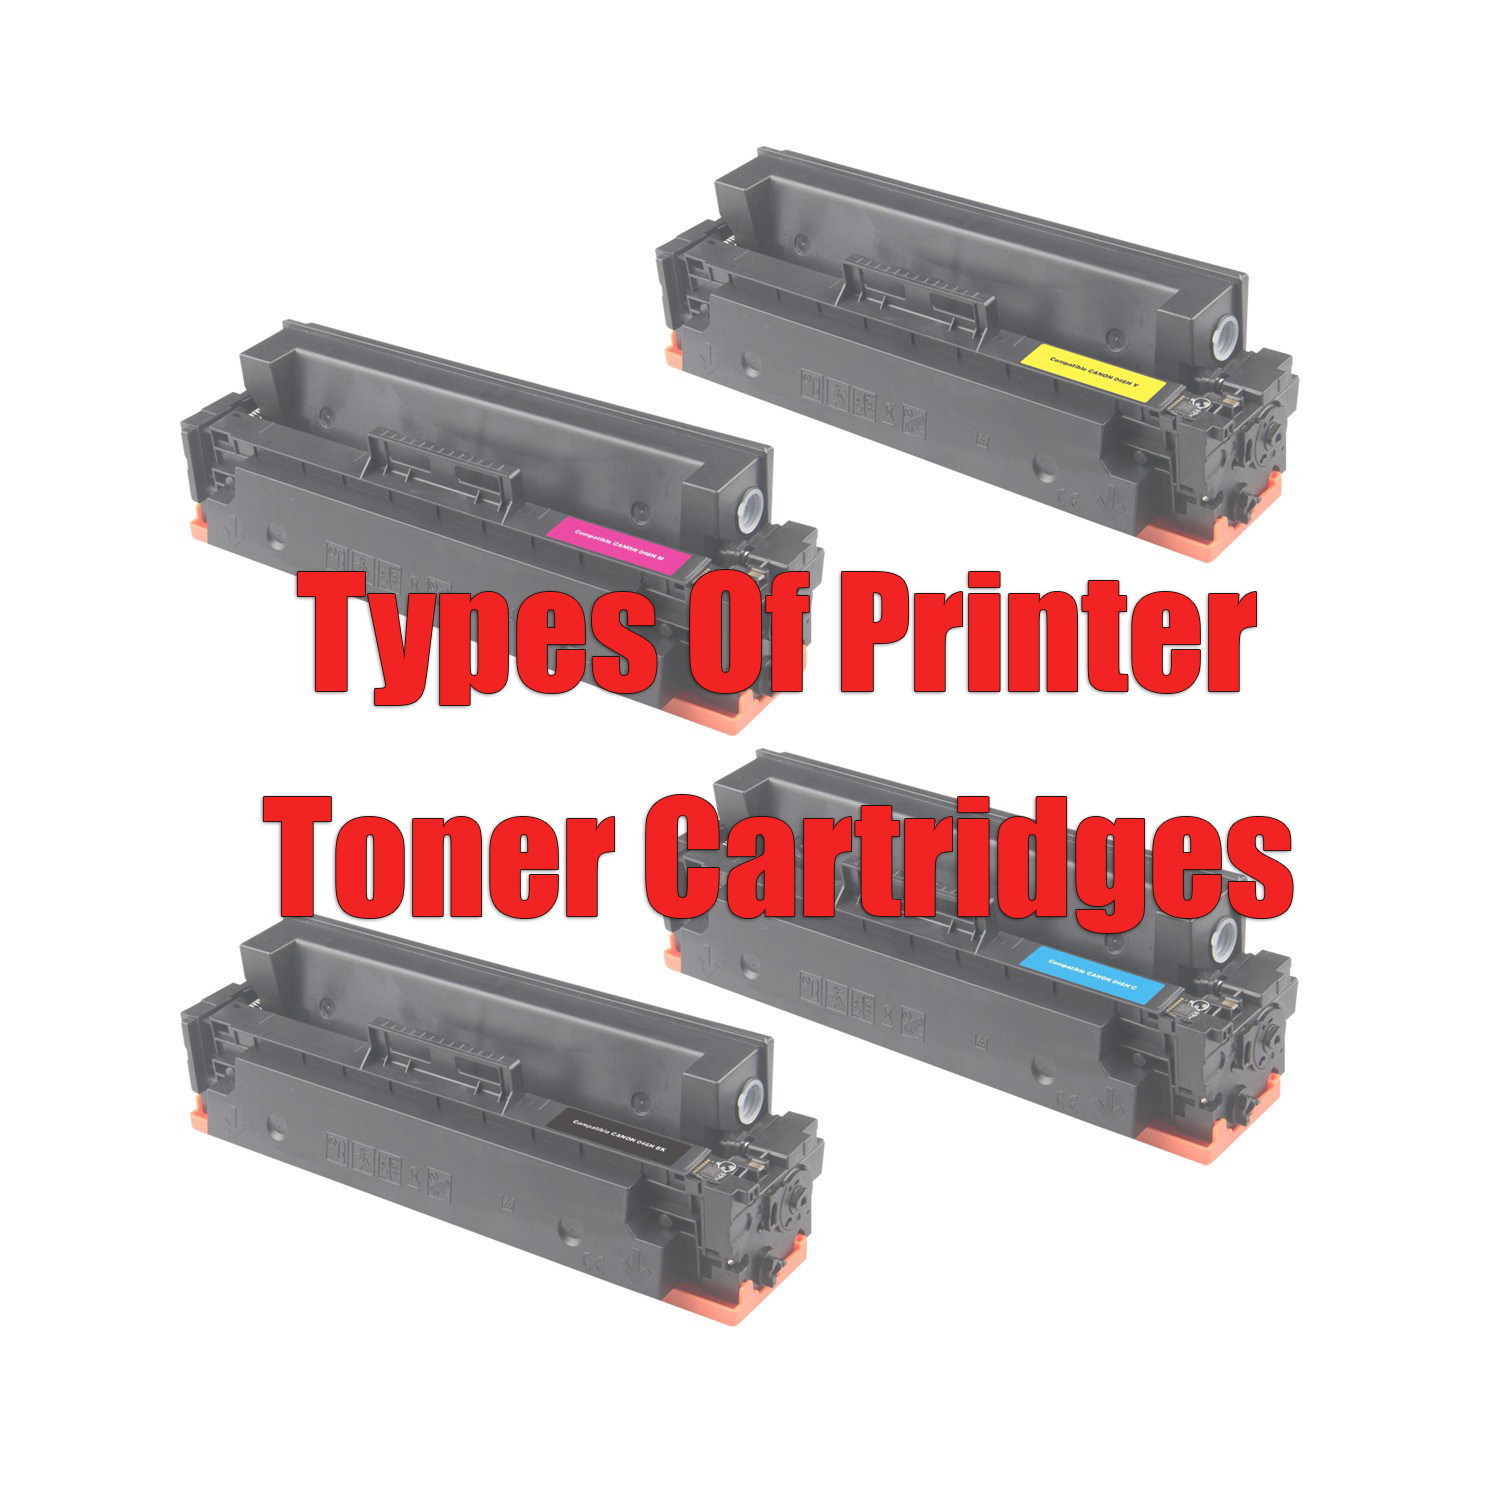 Types Of Printer Toner Cartridges